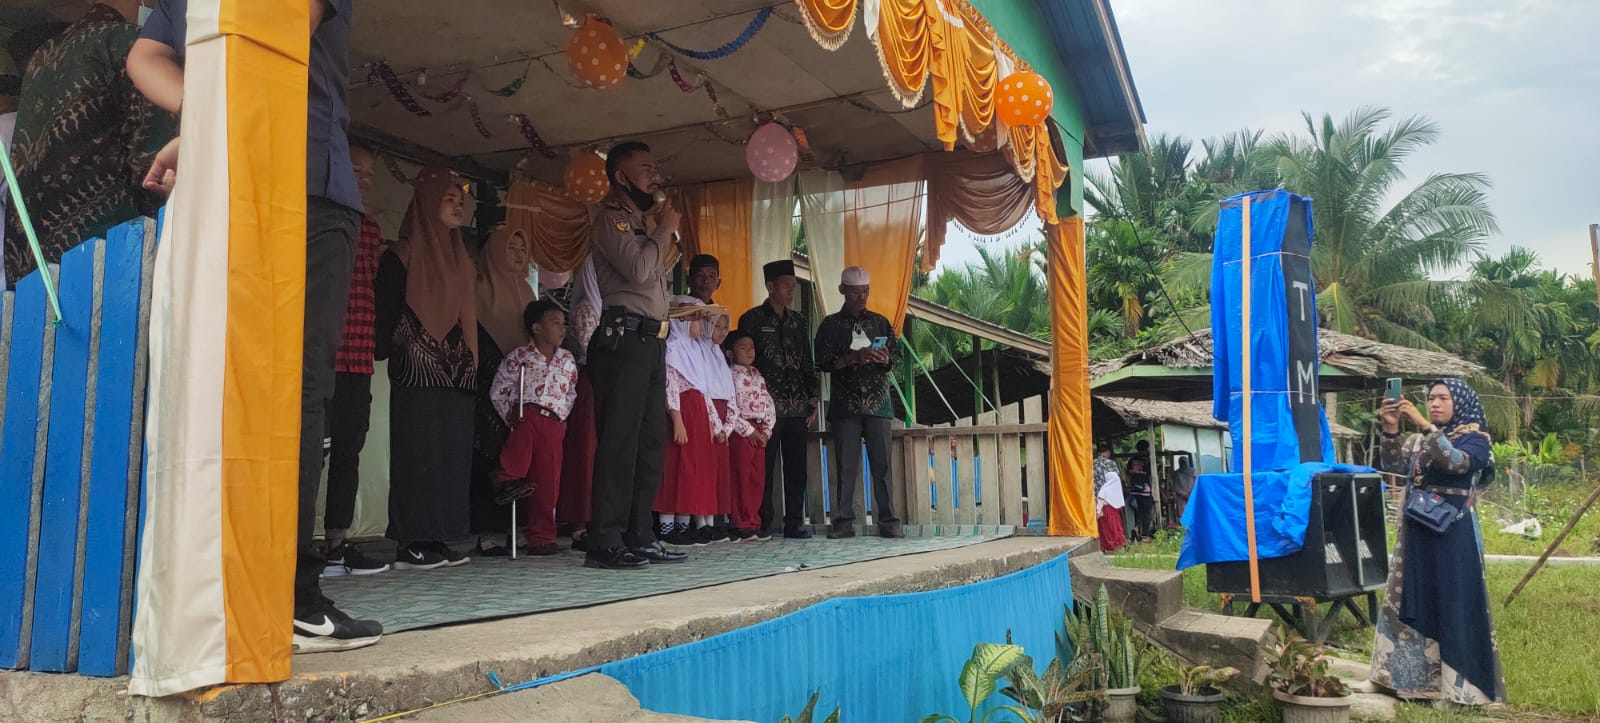 Bhabinkamtibmas Desa Tanjung Simpang Inhil Turut Aktif di Dunia Pendidikan